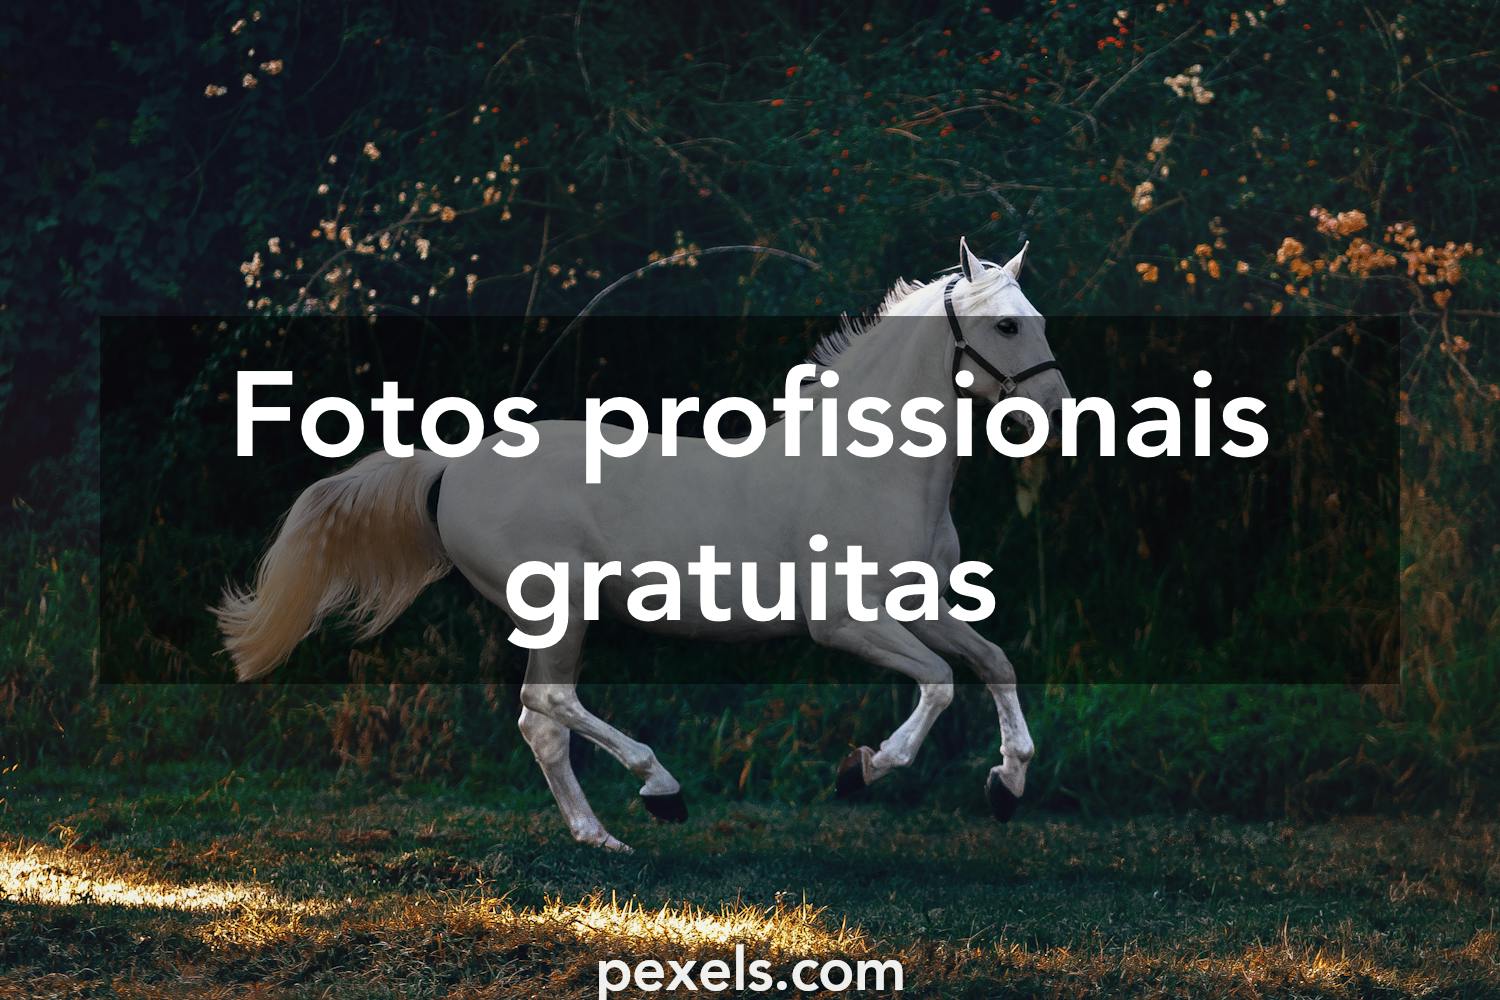 20.000+ melhores imagens de Cavalo Pulando · Download 100% grátis